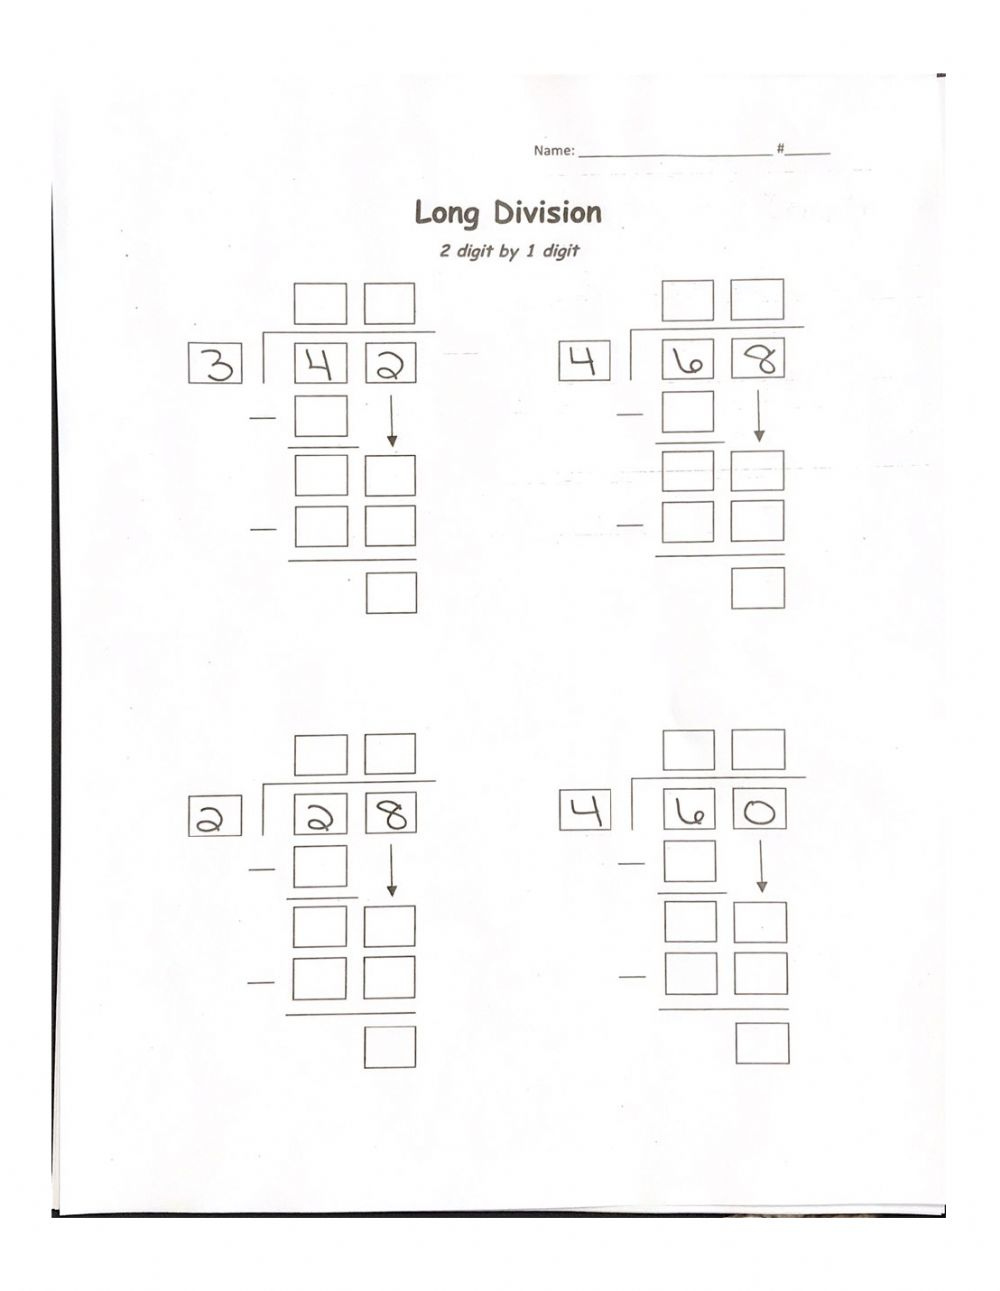 Long Division 2 Digit By 1 Digit No Remainder Worksheet